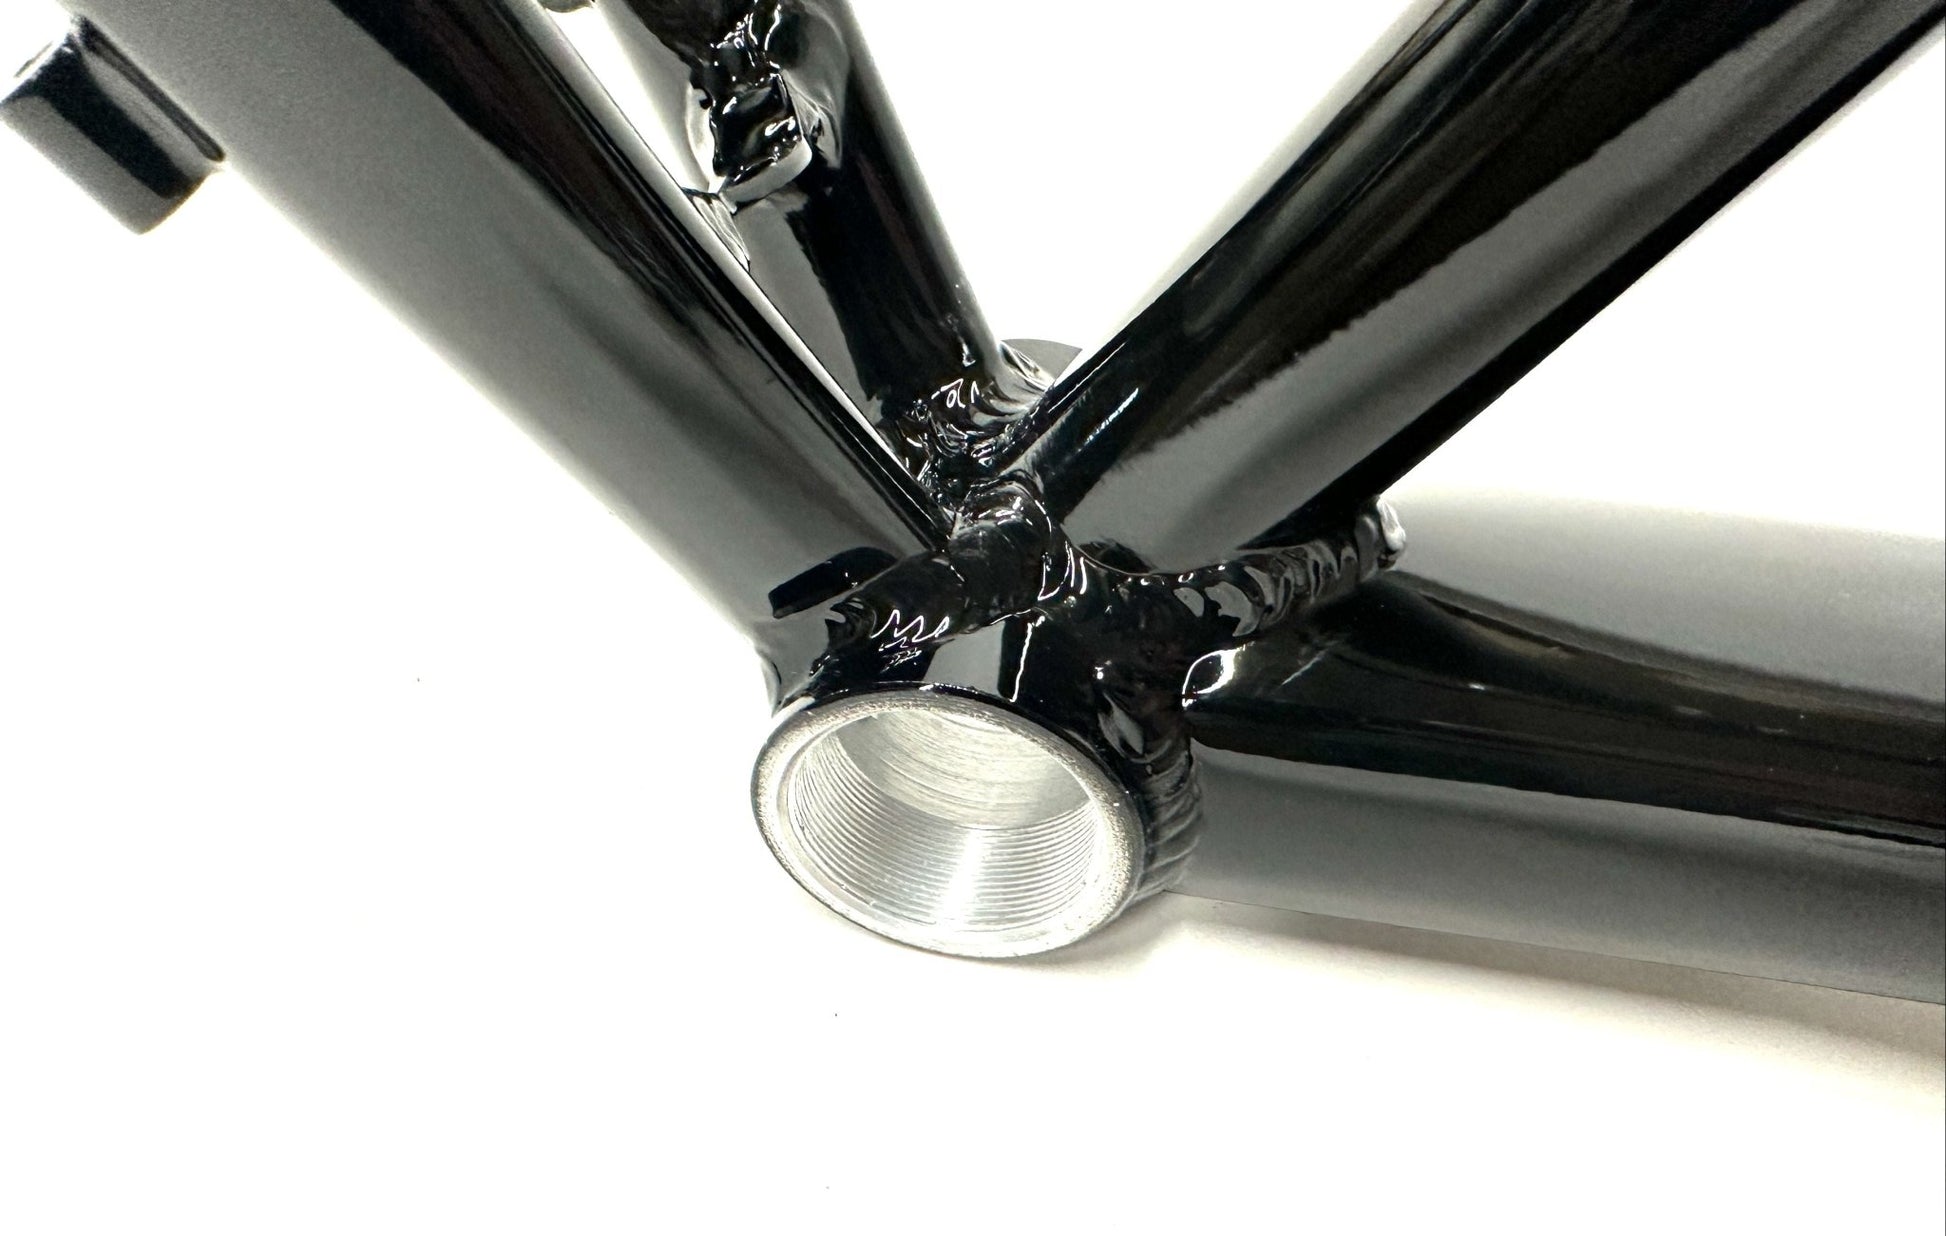 FRAMED BASSWOOD 700c Alloy 54cm Disc Cyclocross Gravel Bike Frame / Fork NEW - Random Bike Parts